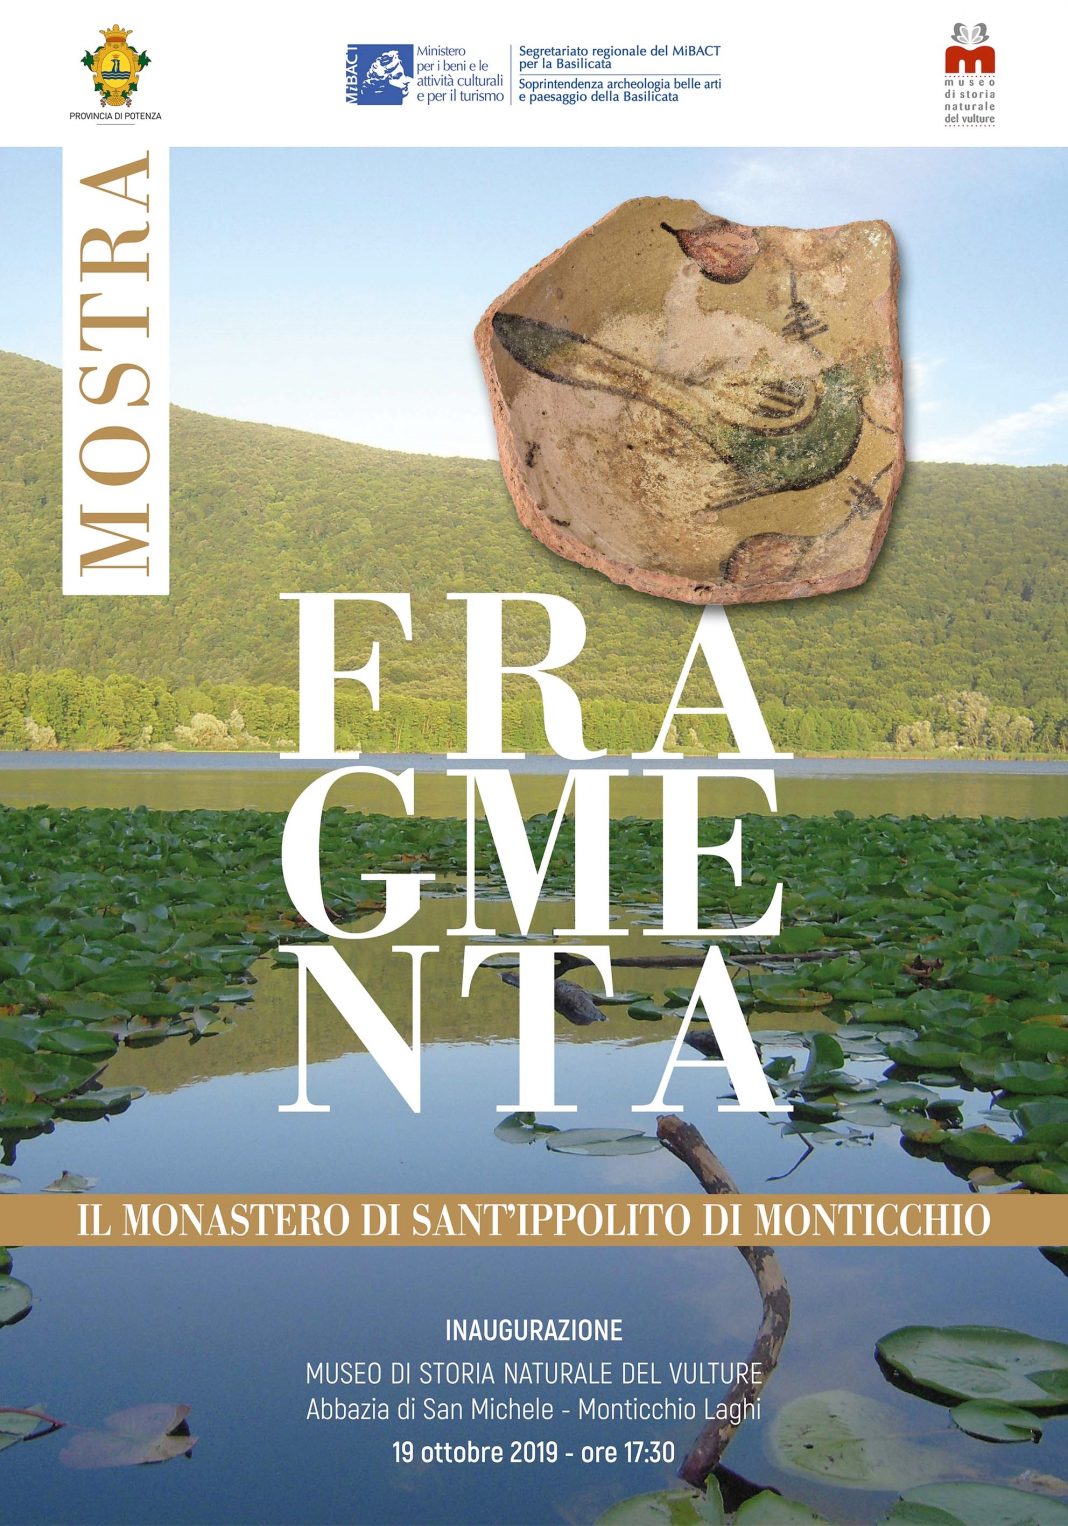 Fragmenta. Il Monastero di Sant’Ippolito di Monticchiohttps://www.exibart.com/repository/media/2019/10/Fragmenta-manifesto-s-1068x1526.jpg